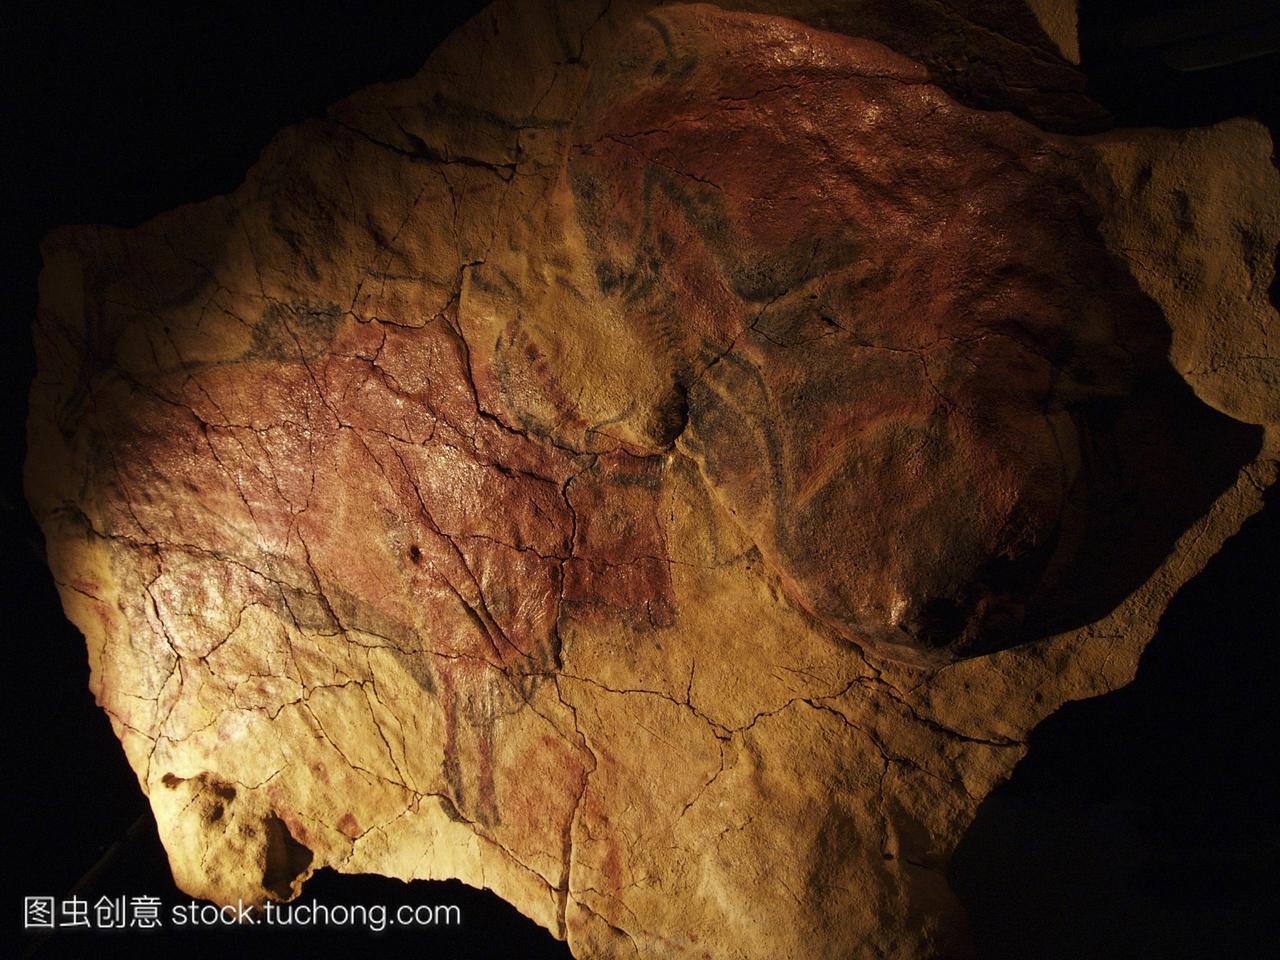 西班牙阿尔塔米拉洞穴的bisons壁画。这个洞穴